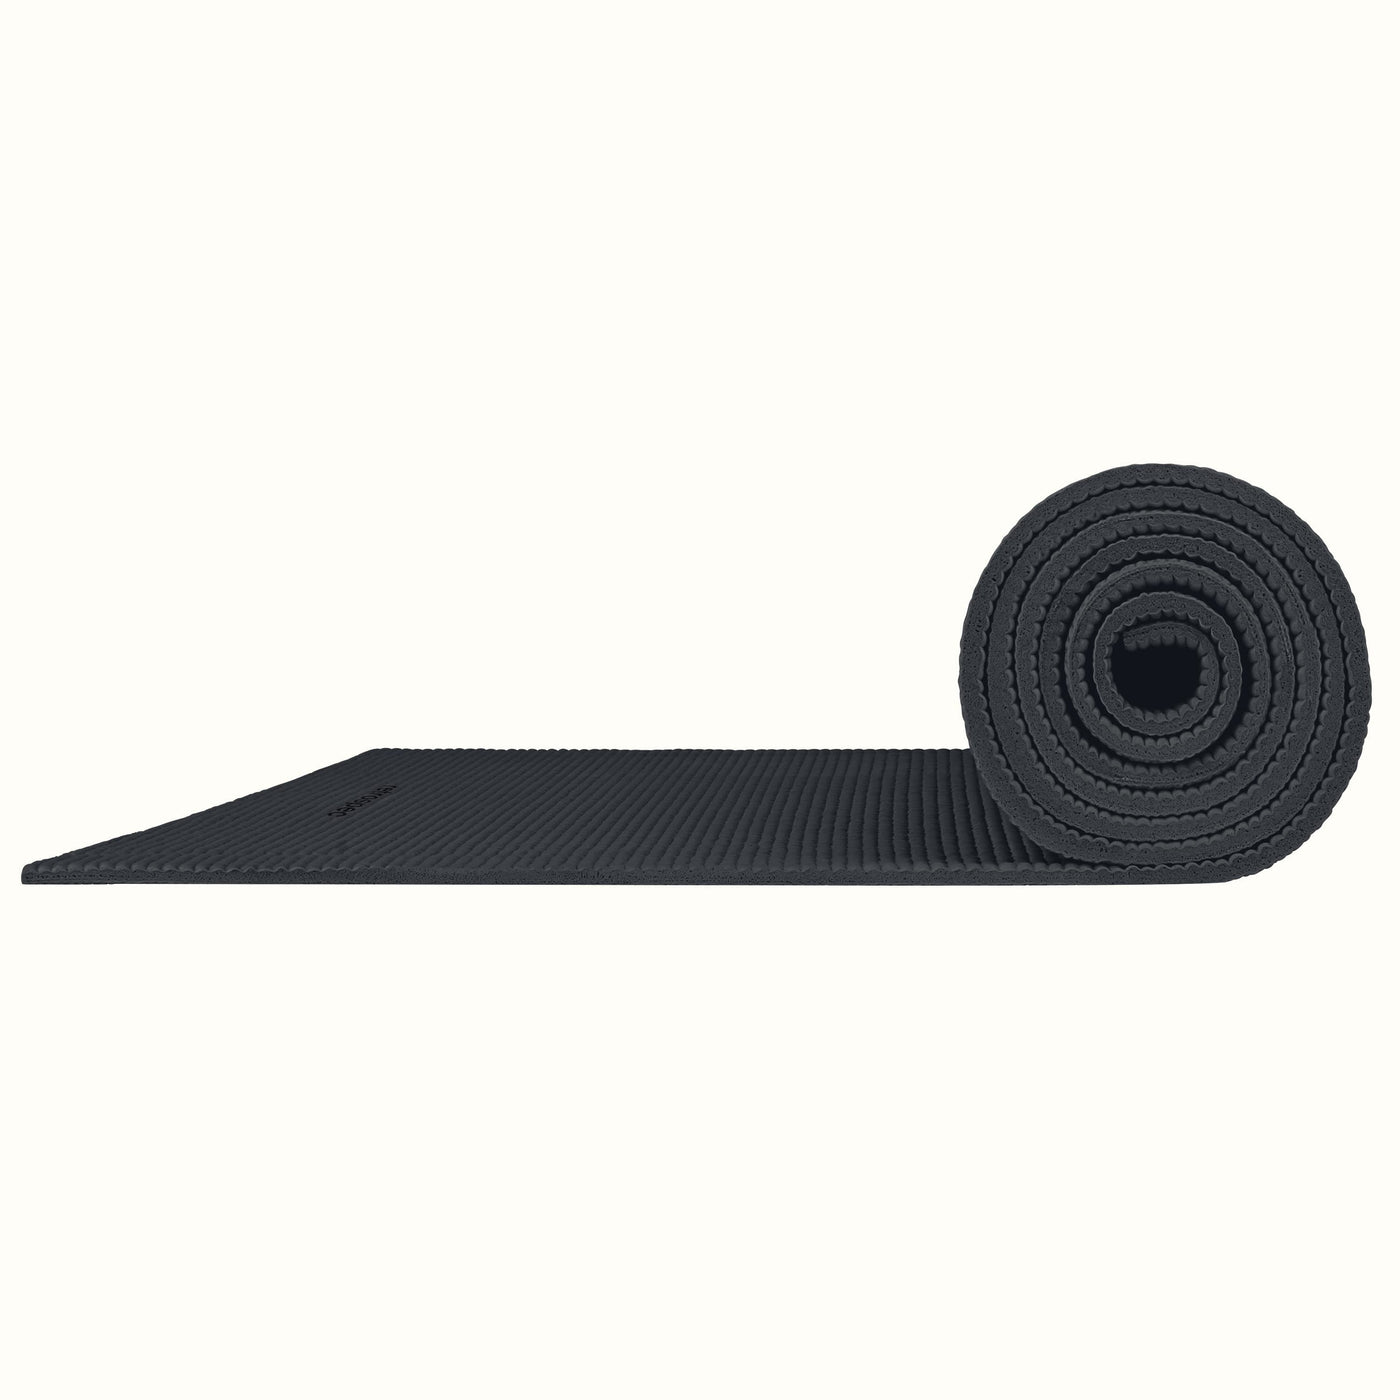 Pismo Yoga Mat 5mm | Graphite